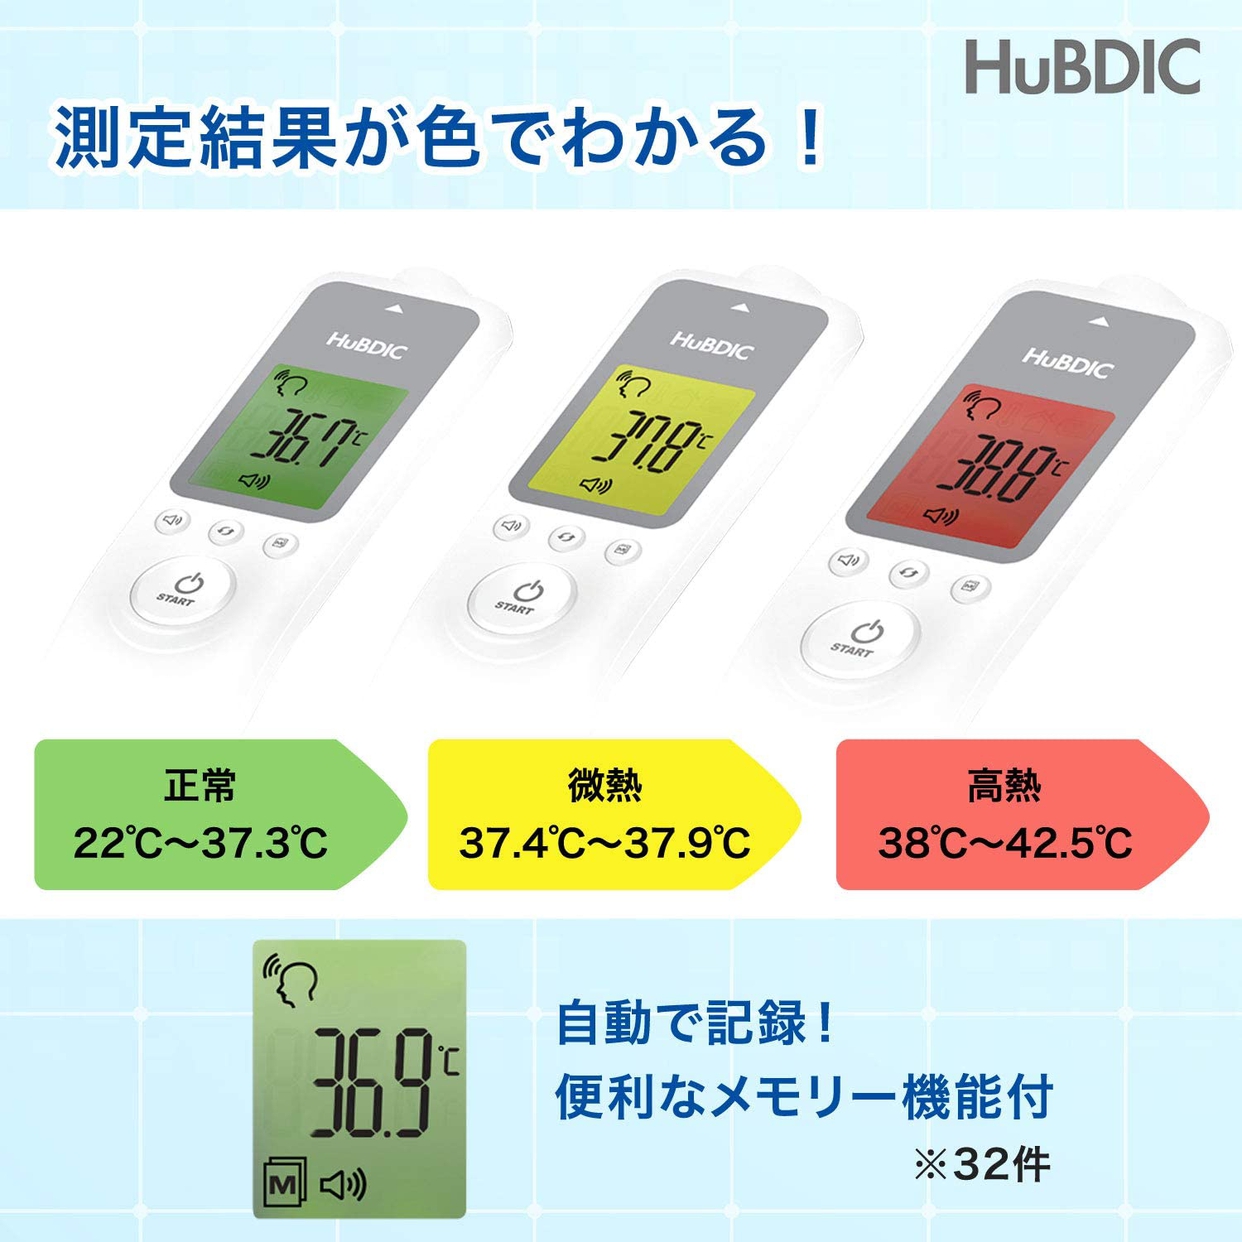 HuBDIC(ヒューデリック) 非接触体温計1000 HFS-1000の商品画像サムネ6 